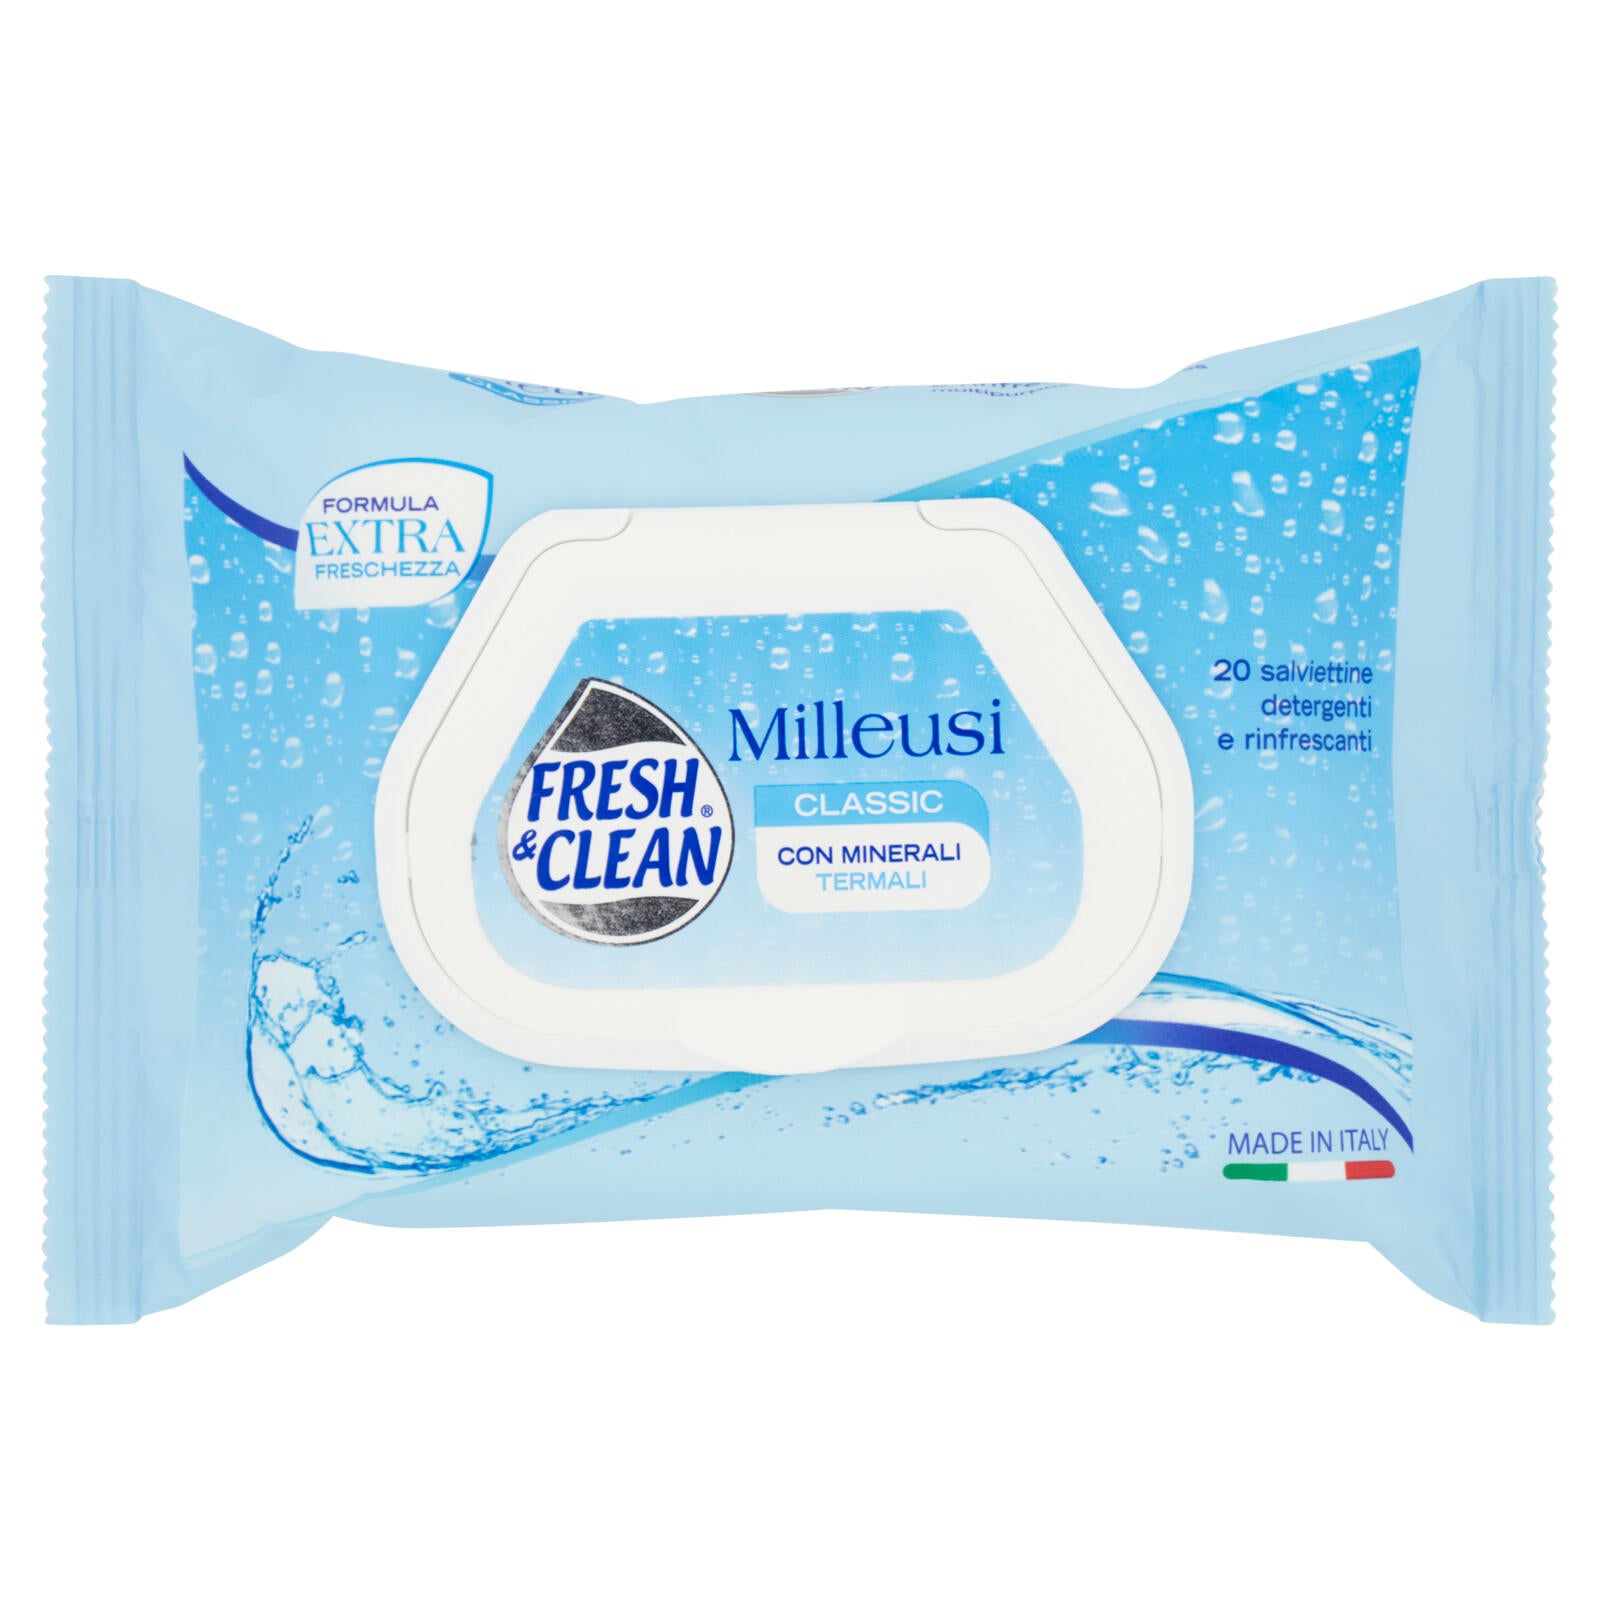 Fresh & Clean Milleusi Classic salviettine detergenti e rinfrescanti 20 pz